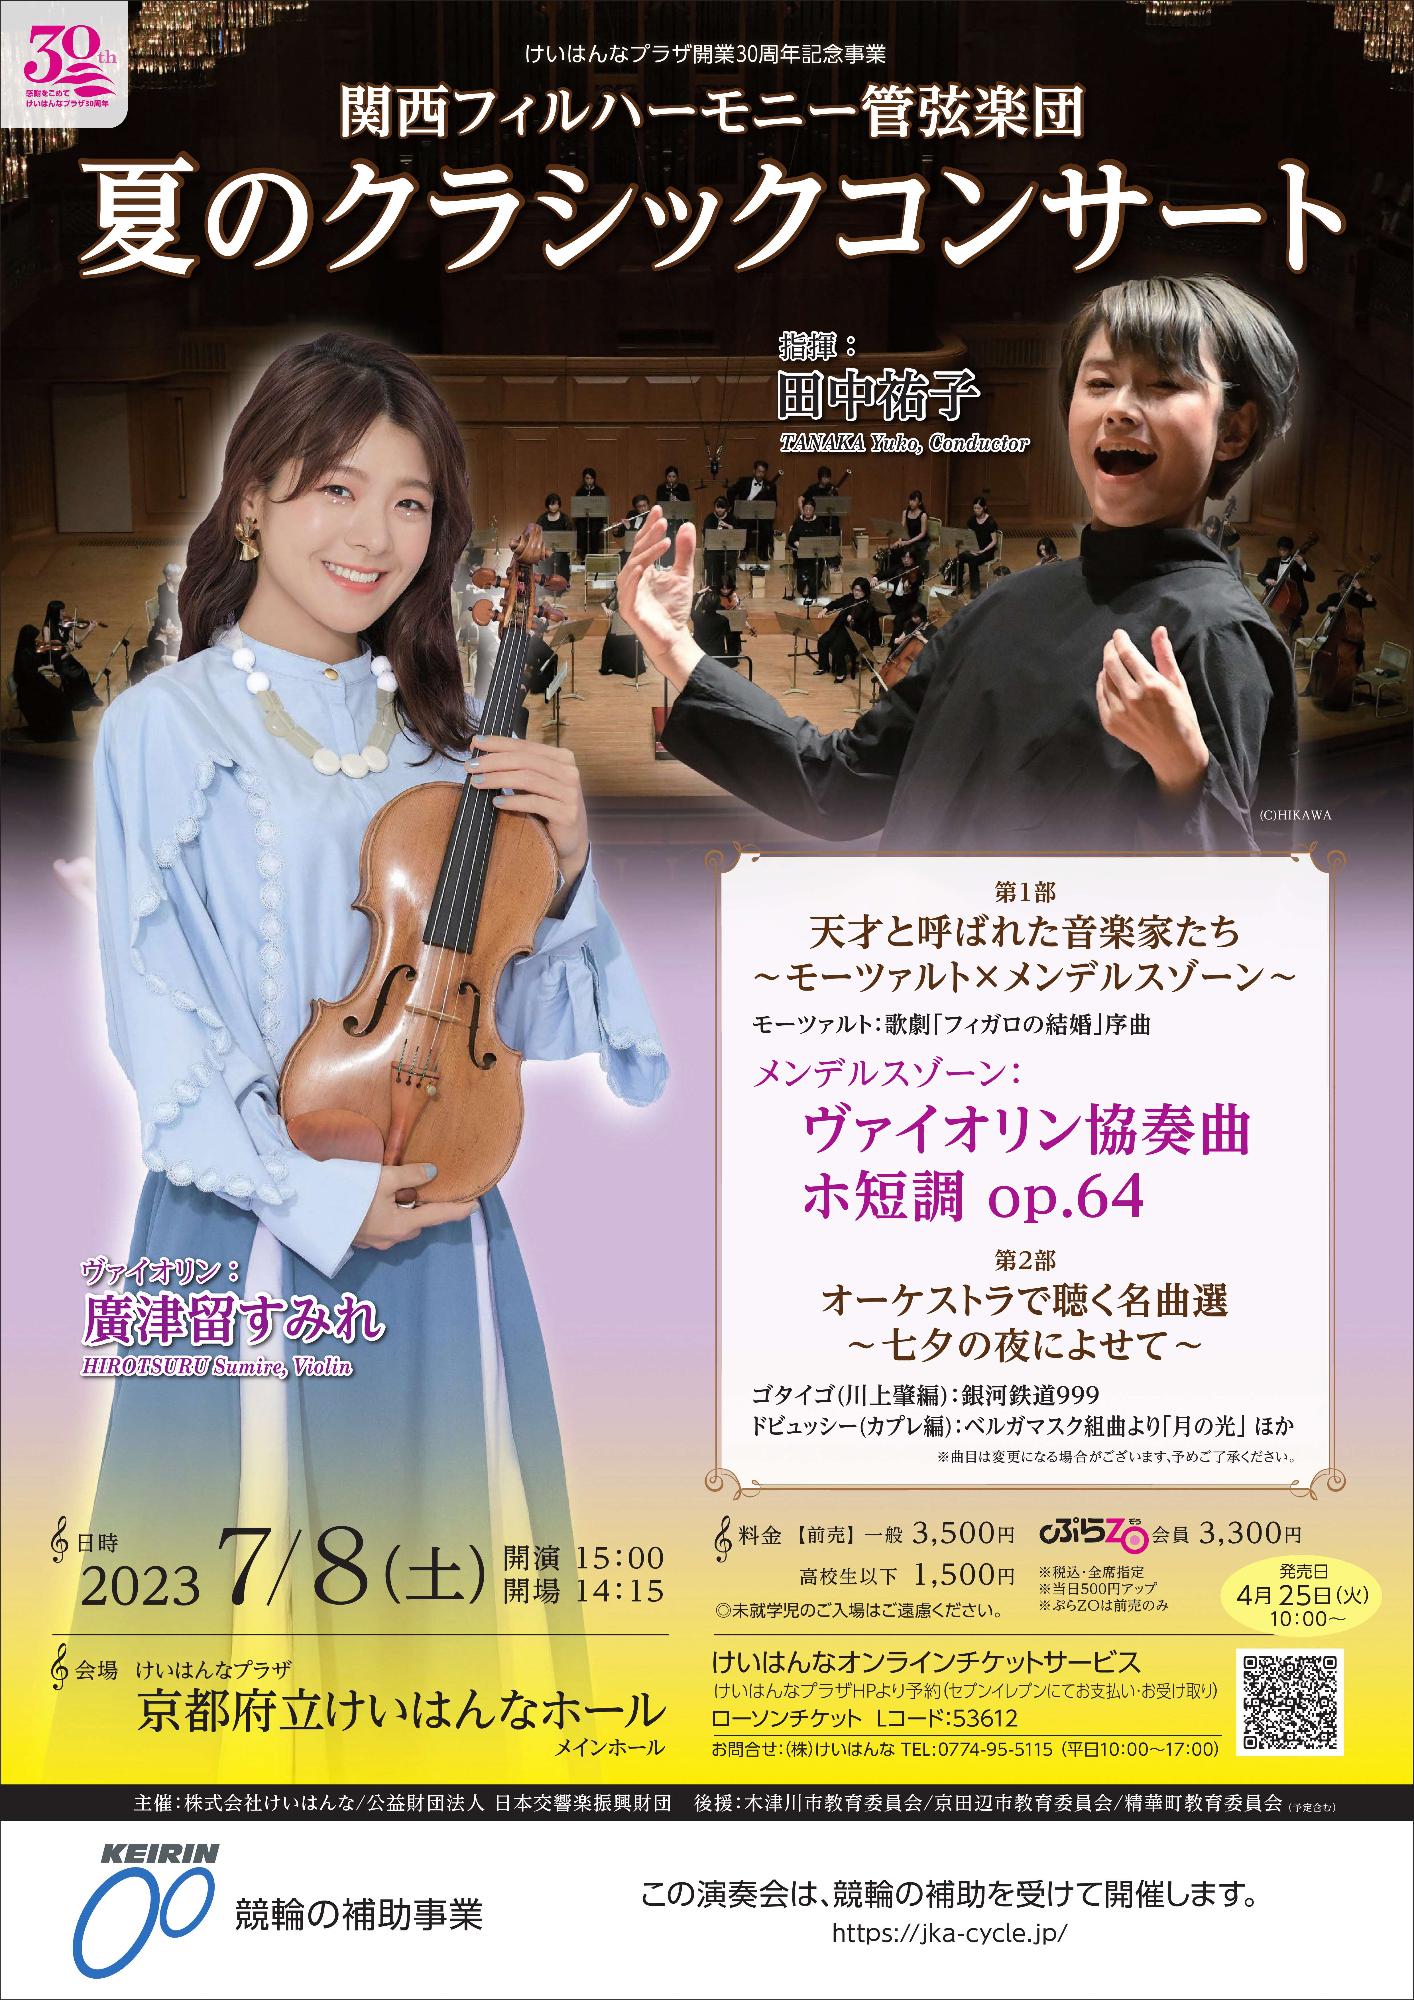 関西フィルハーモニー管弦楽団 夏のクラシックコンサート